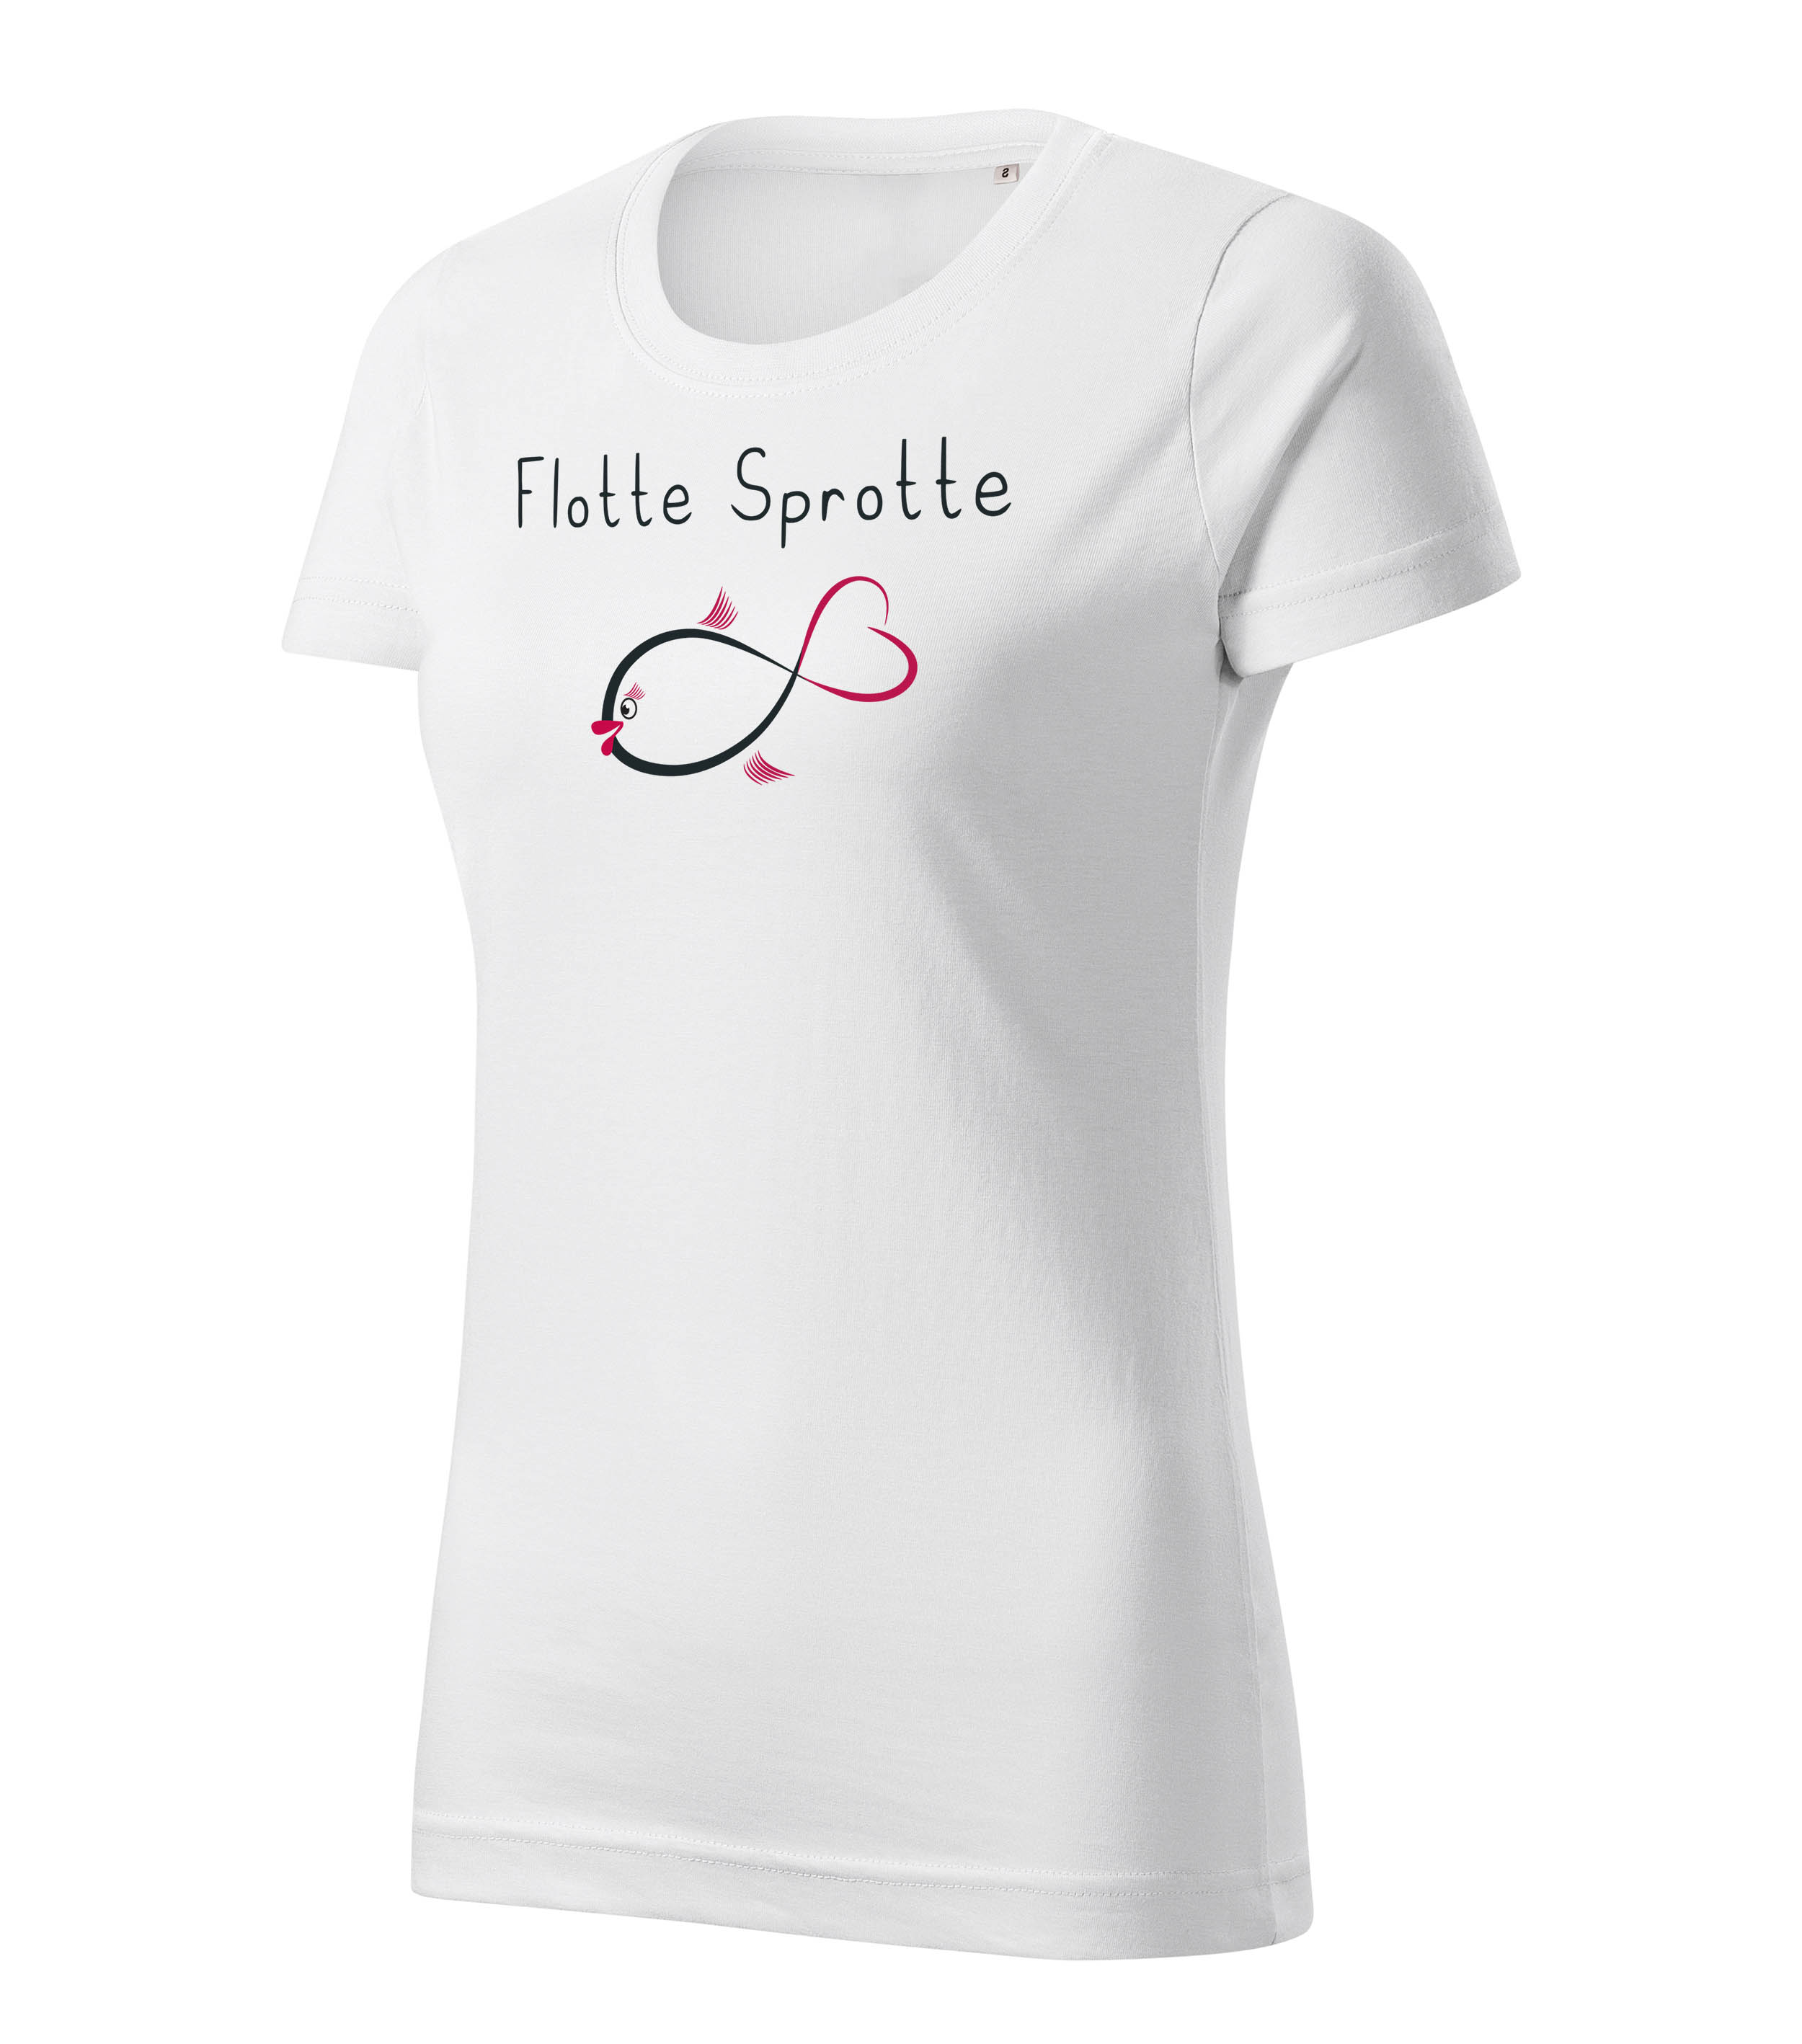 T-Shirt Damen - Flotte Sprotte Damen Oberteil - in 2 Farben und in verschiedenen Größen - Damen Top perfekt als Geschenk mit lustige Aufdruck für Frauen 